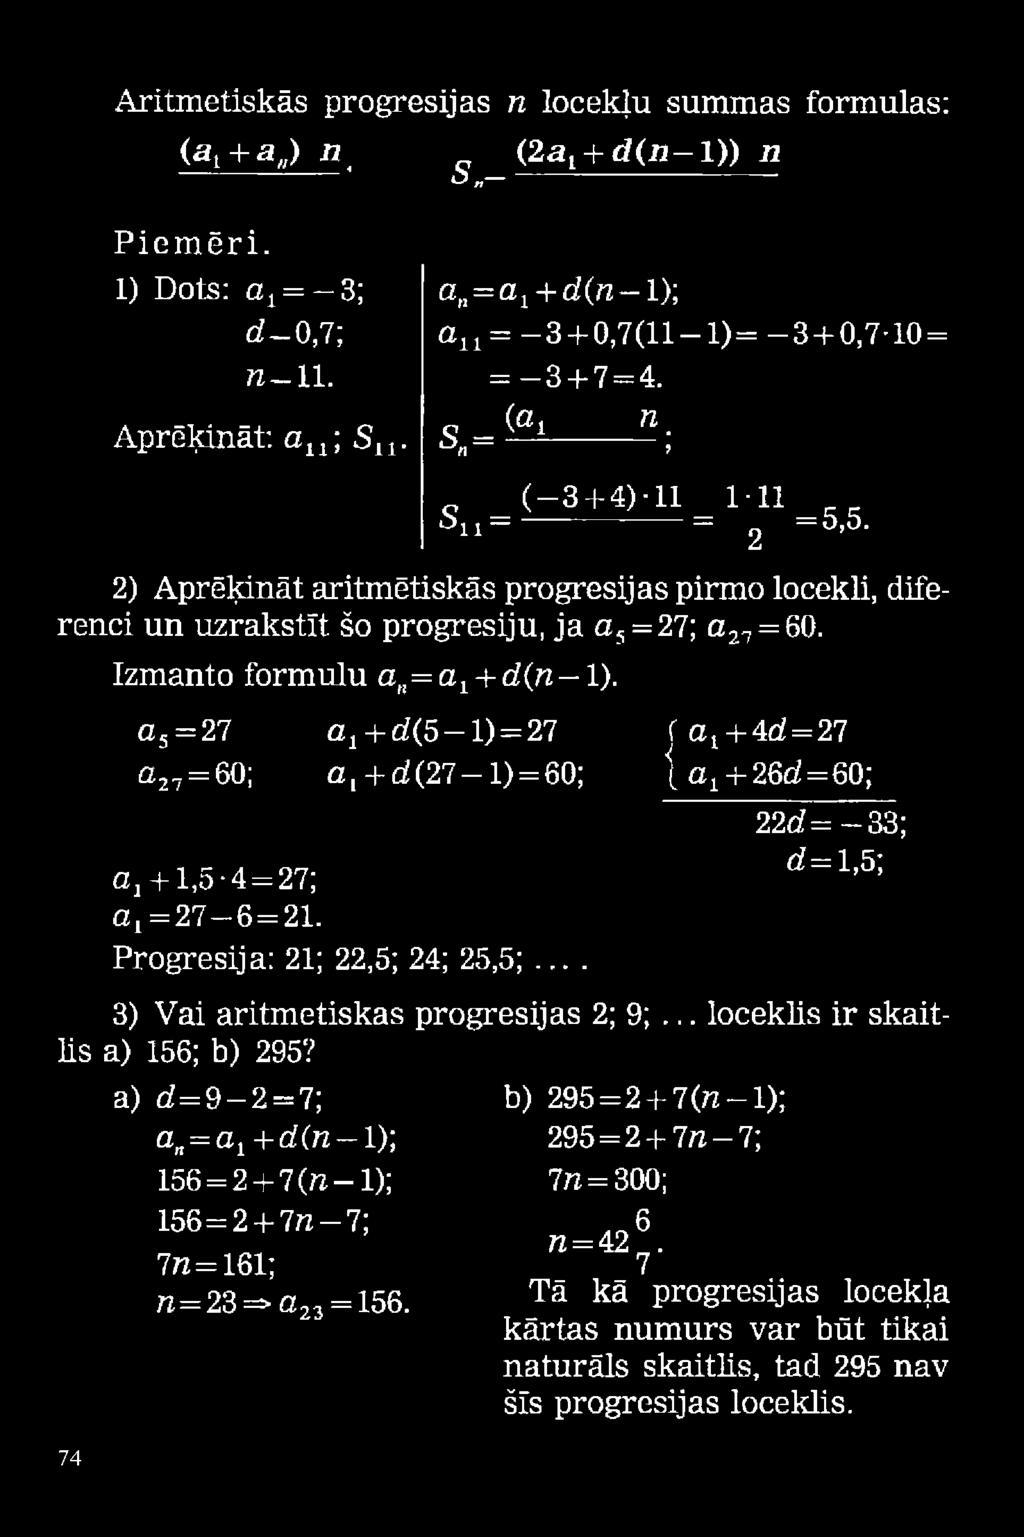 Izmanto formulu an=ay + d(n 1). a5= 27 a 27 = 60; aj+ d(5 1) = 27 f a t + 4d = 27 a, + d (2 7 -l) = 60; ļ a 1+ 26o!=60; Gtj + 1,5-4 = 27; a 1 = 27-6 = 21. Progresija: 21; 22,5; 24; 25,5;... 22g?